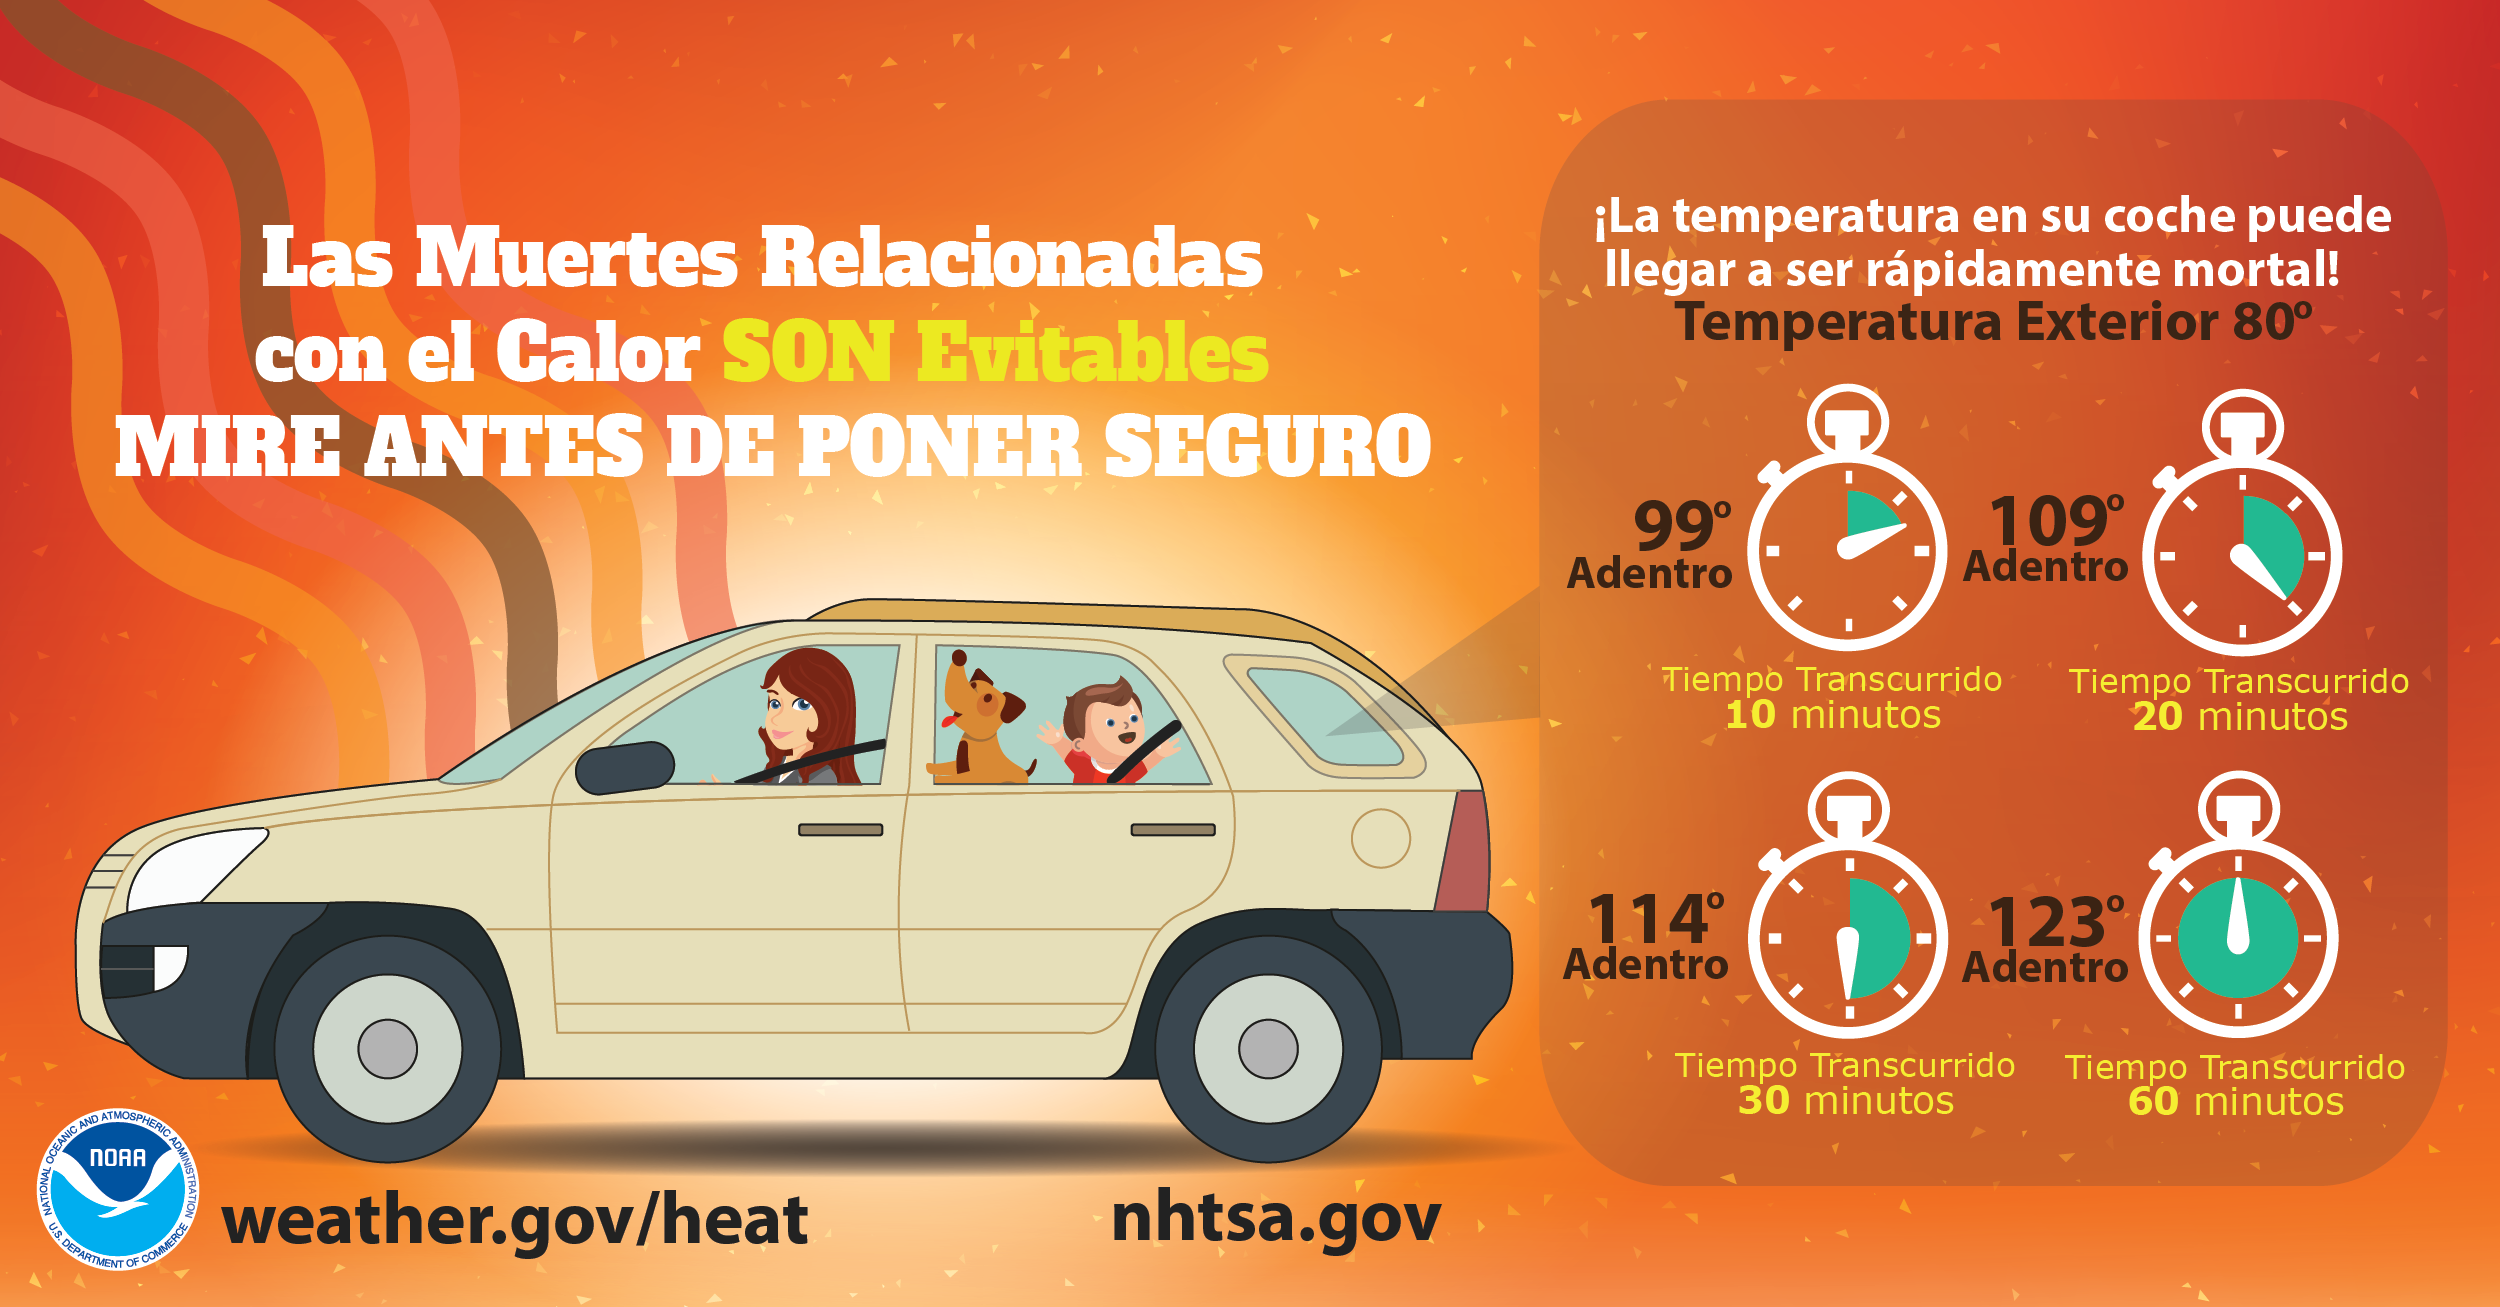 Las muertes relacionadas con el calor son evitables. Mire antes de poner seguro. Â¡La temperatura en su coche puede llegar a ser rÃ¡pidamente mortal!